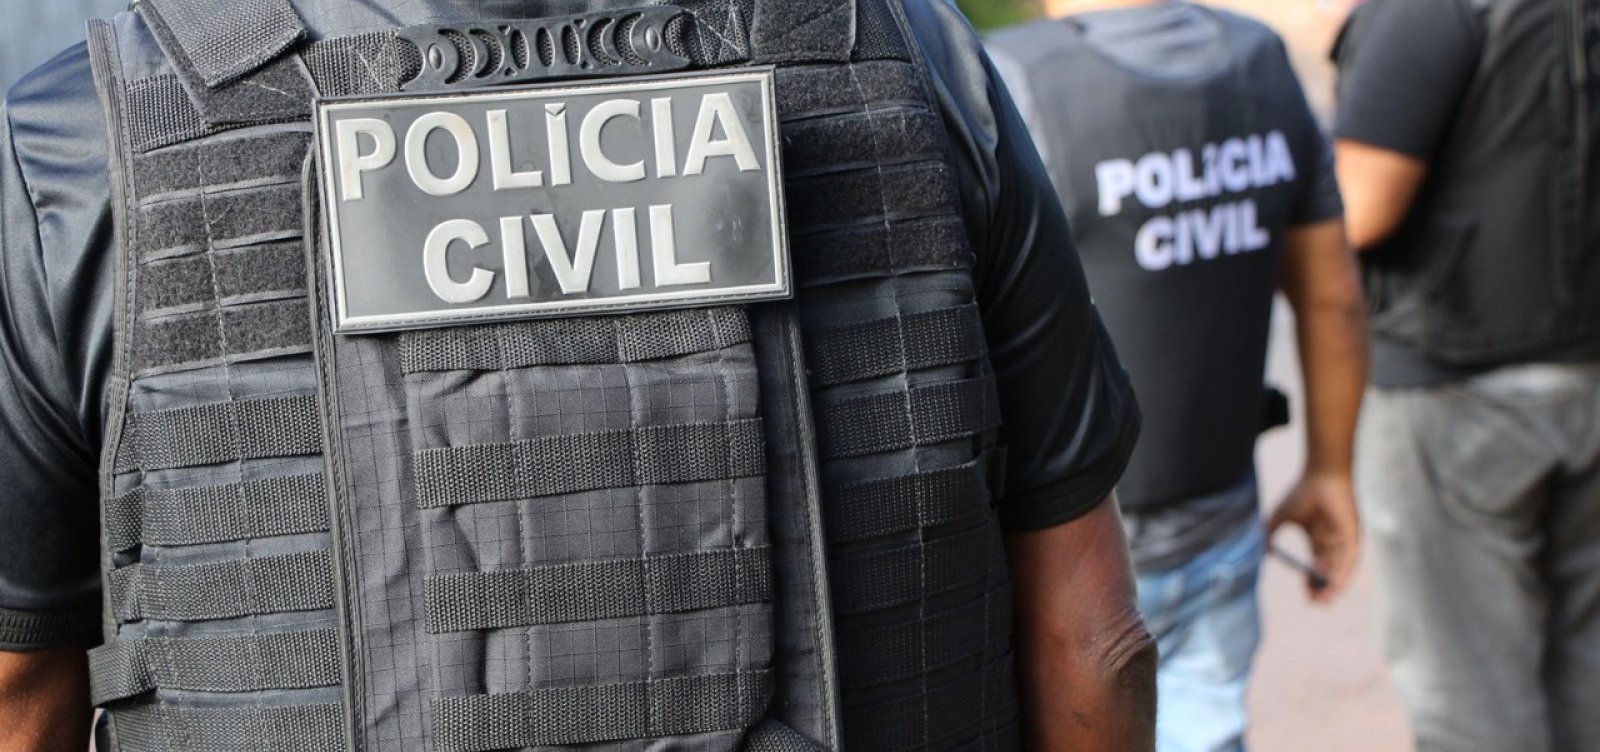 Acusado de prender e estuprar mulher em sua própria casa é detido na Bahia